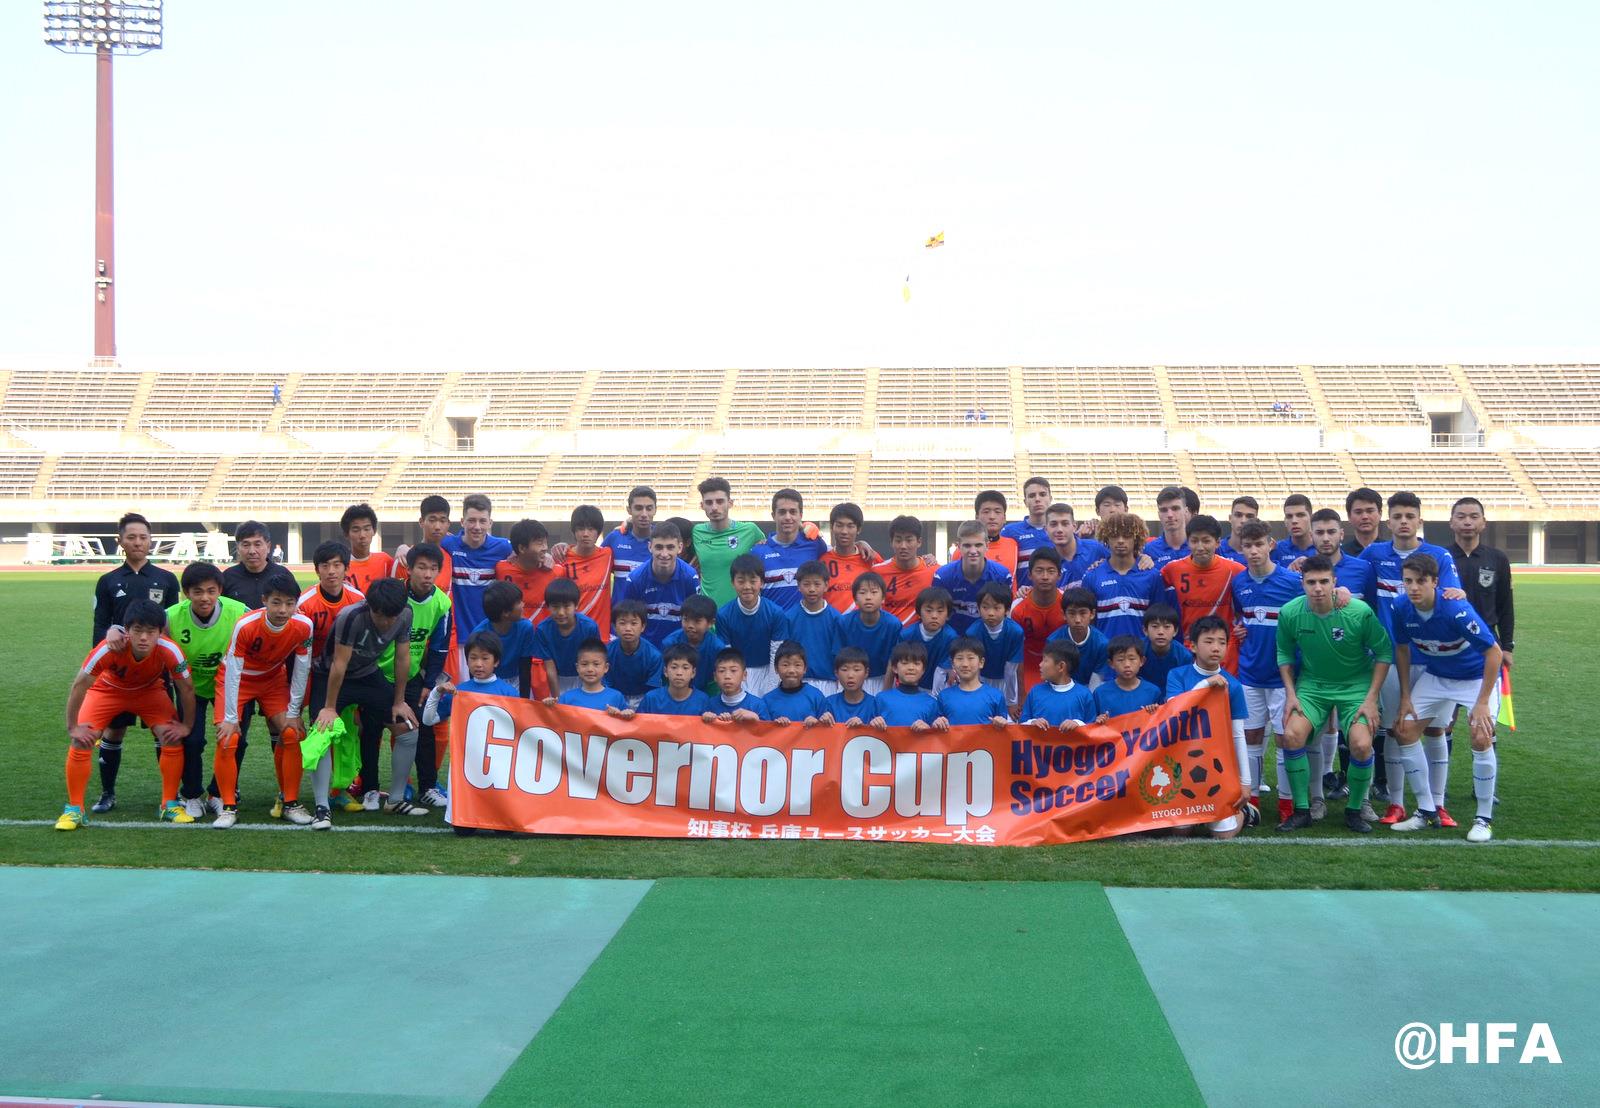 Sampdoria Sub17 – Governor Cup – Hyogo (JA) 2017